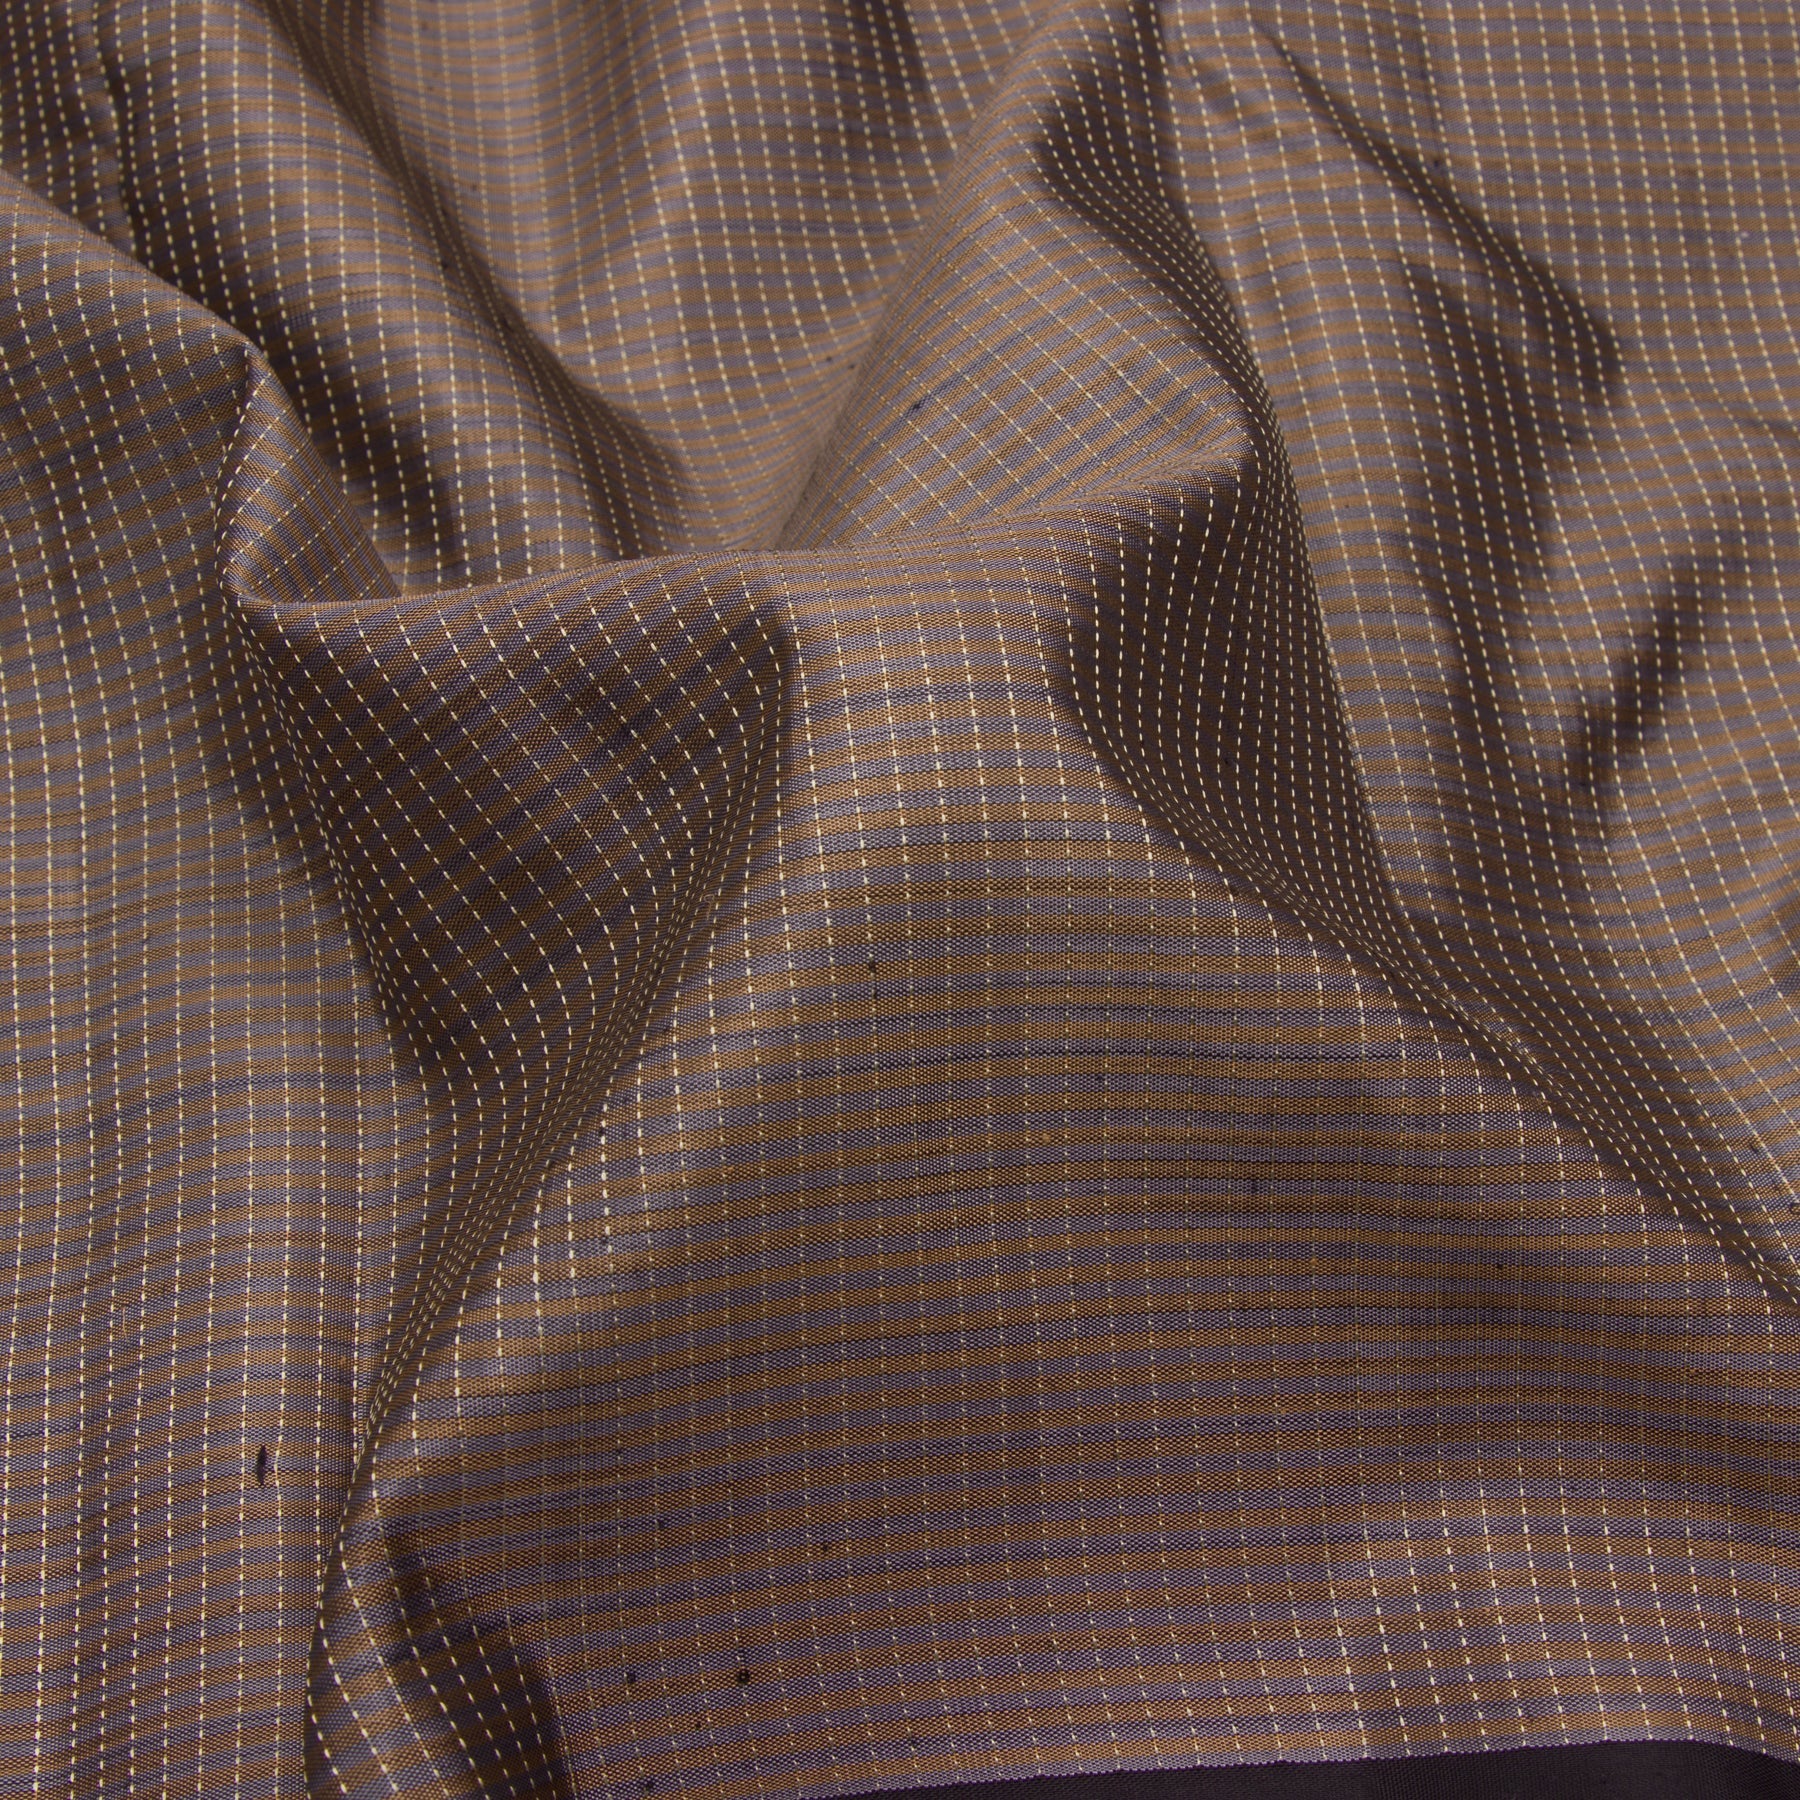 Kanakavalli Kanjivaram Silk Sari 23-599-HS001-08114 - Fabric View